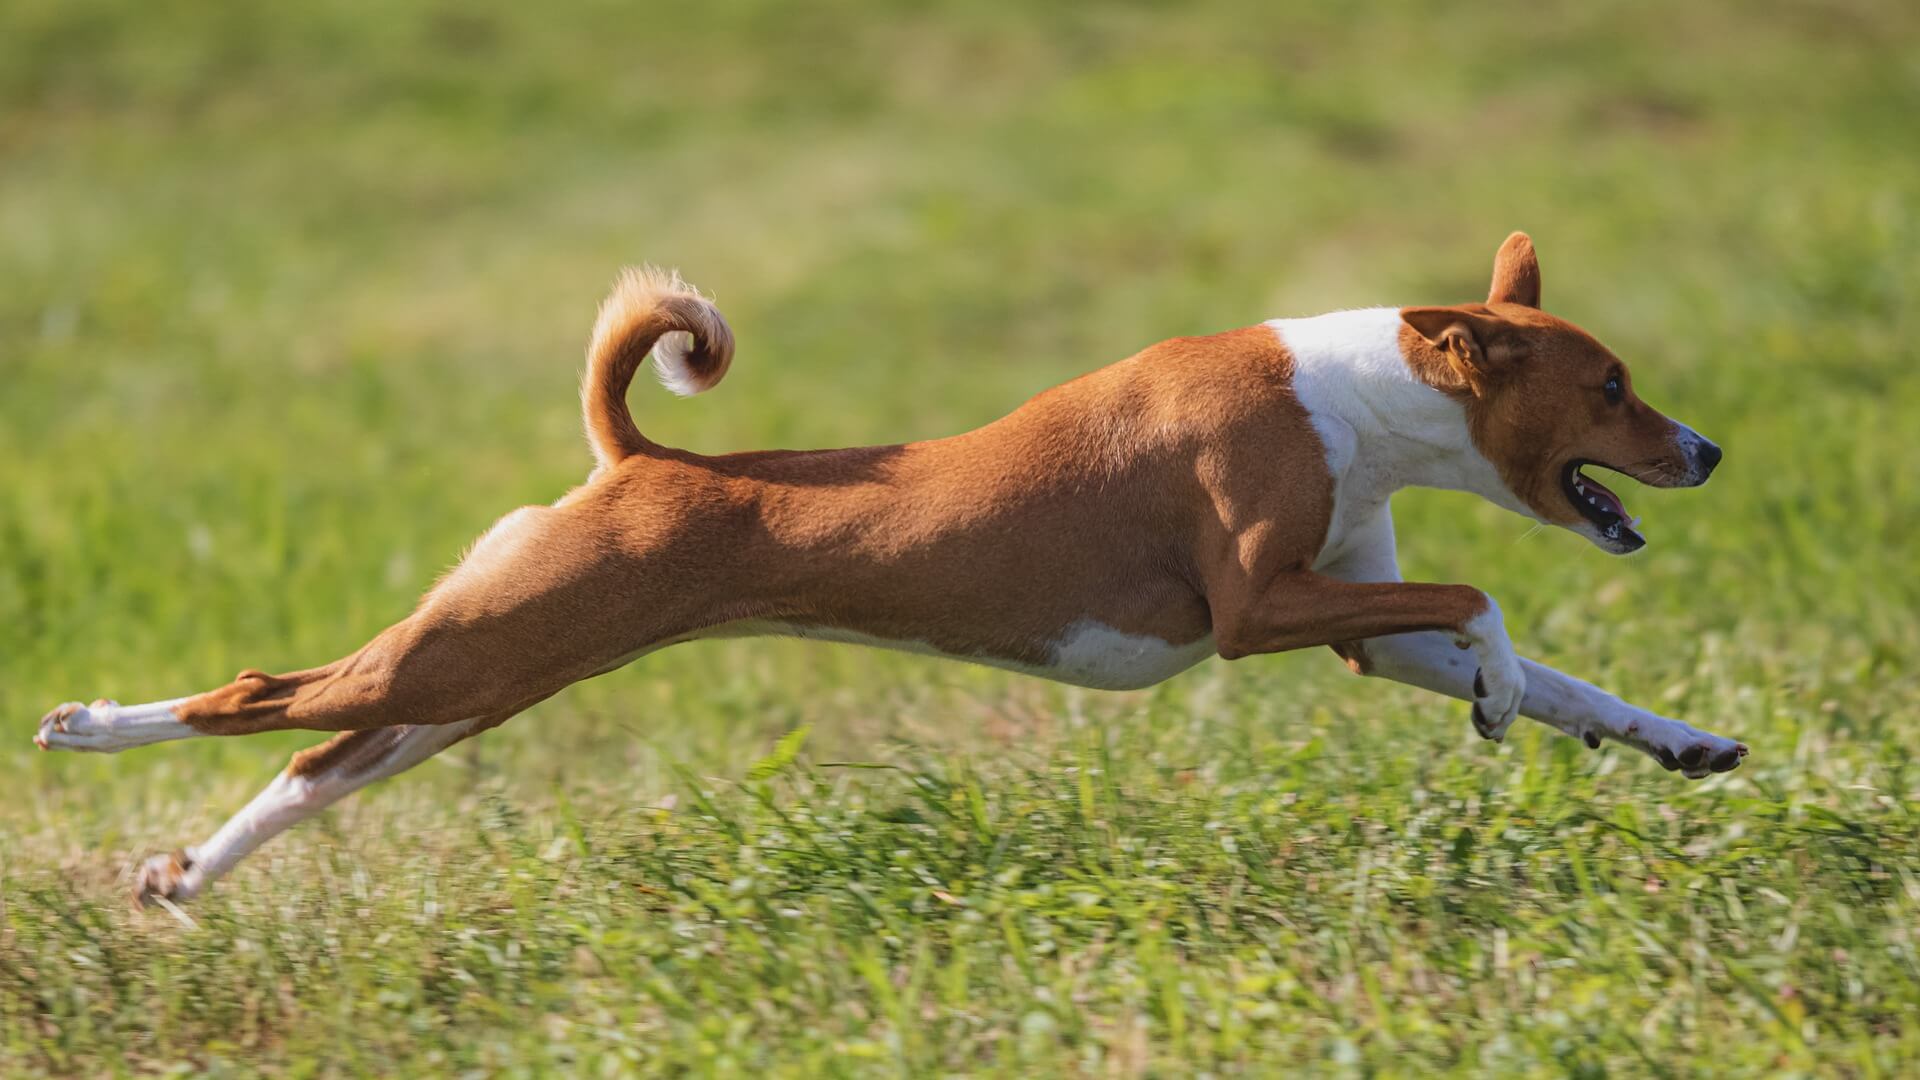 Il cane corre a grande velocità, grazie al cortisolo che lo prepara alla fuga.